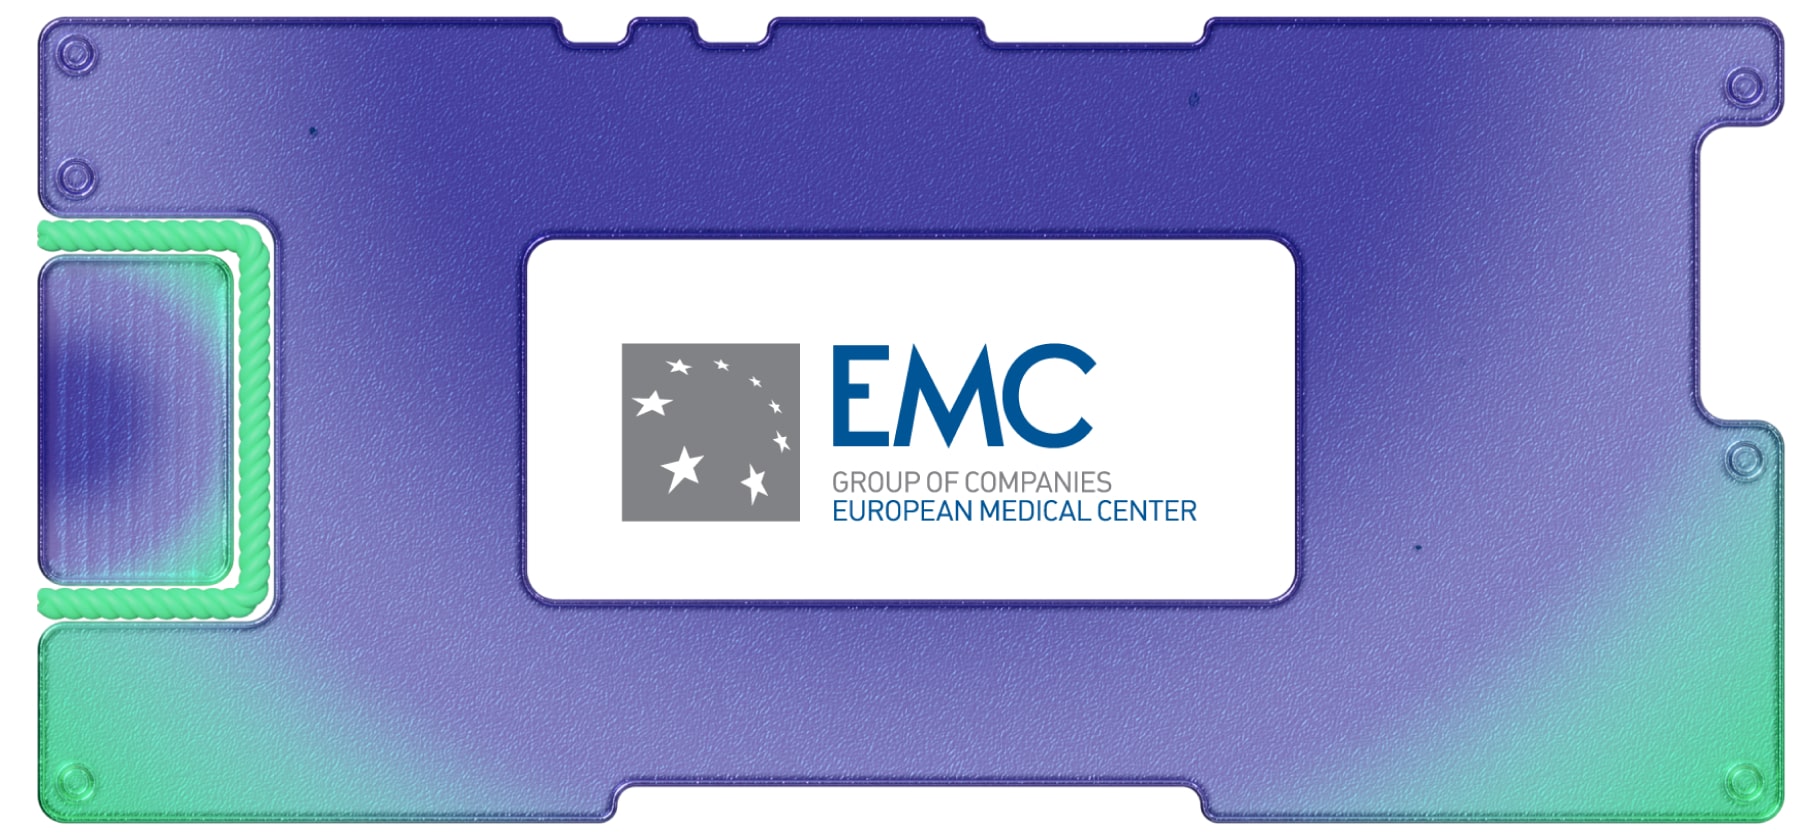 Обзор «Европейского медицинского центра»: целесообразны ли среднесрочные инвестиции